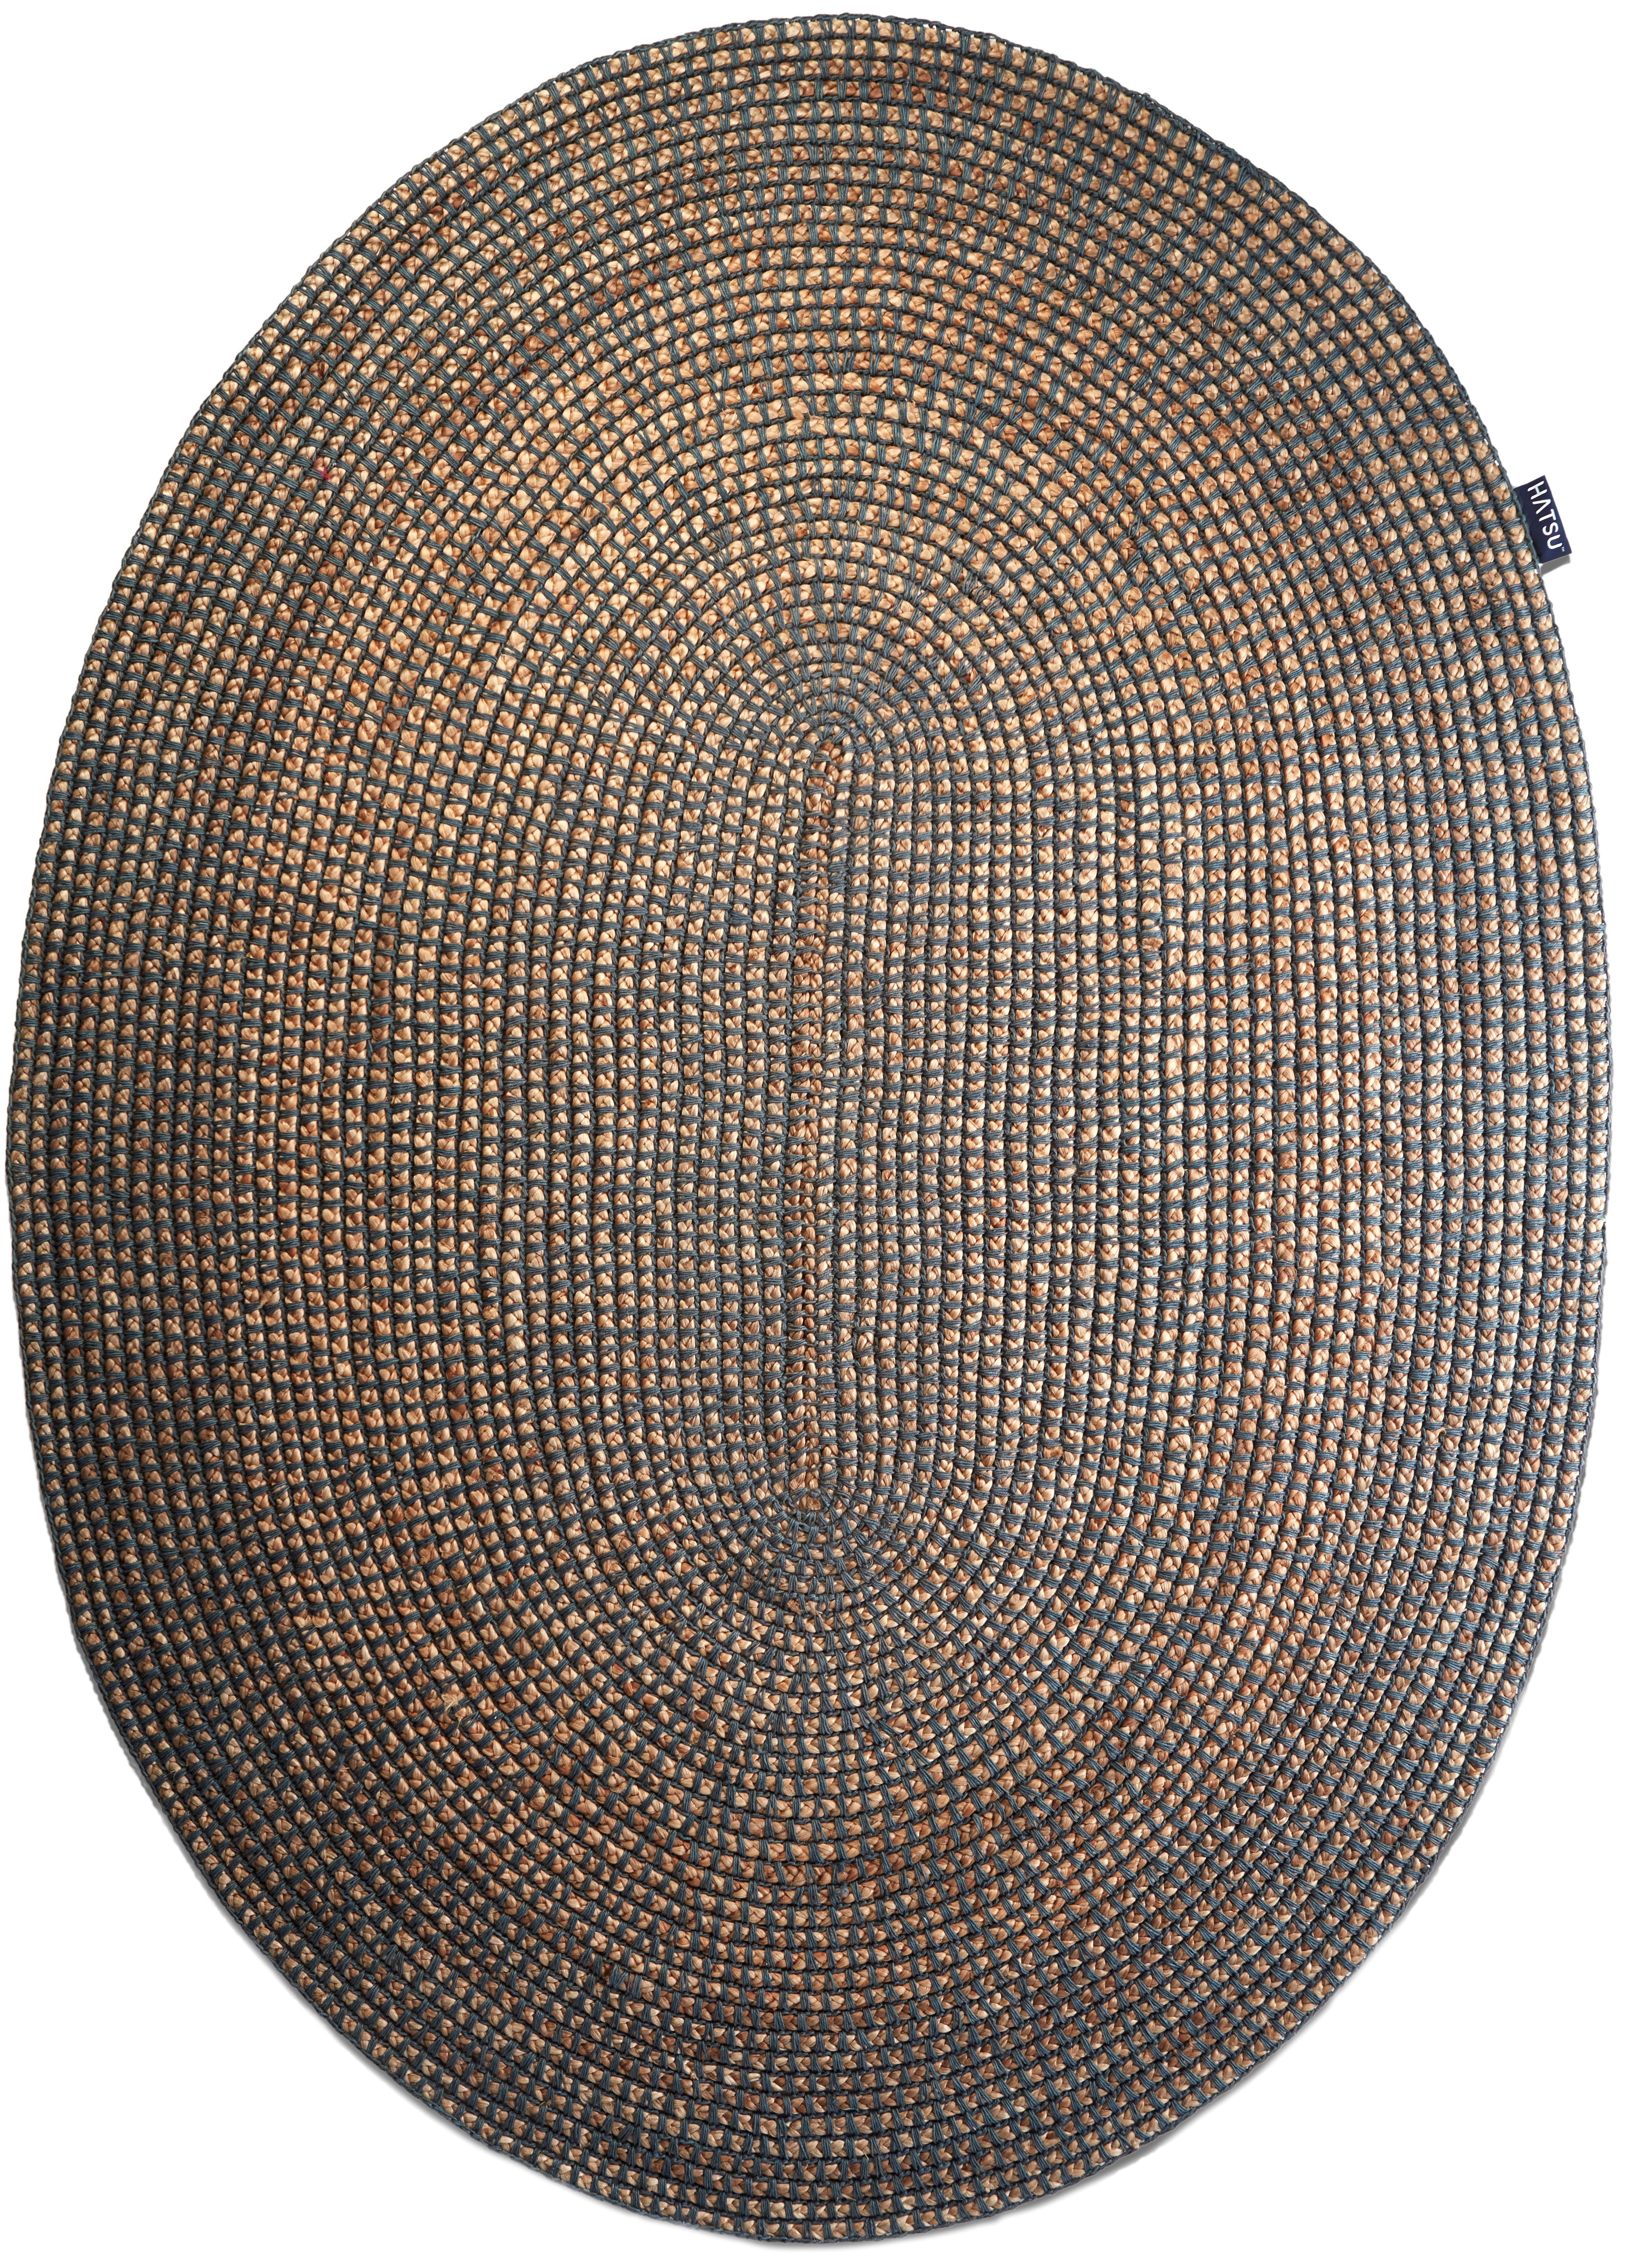 Indian Handloom Oval Jute Rug by Hatsu